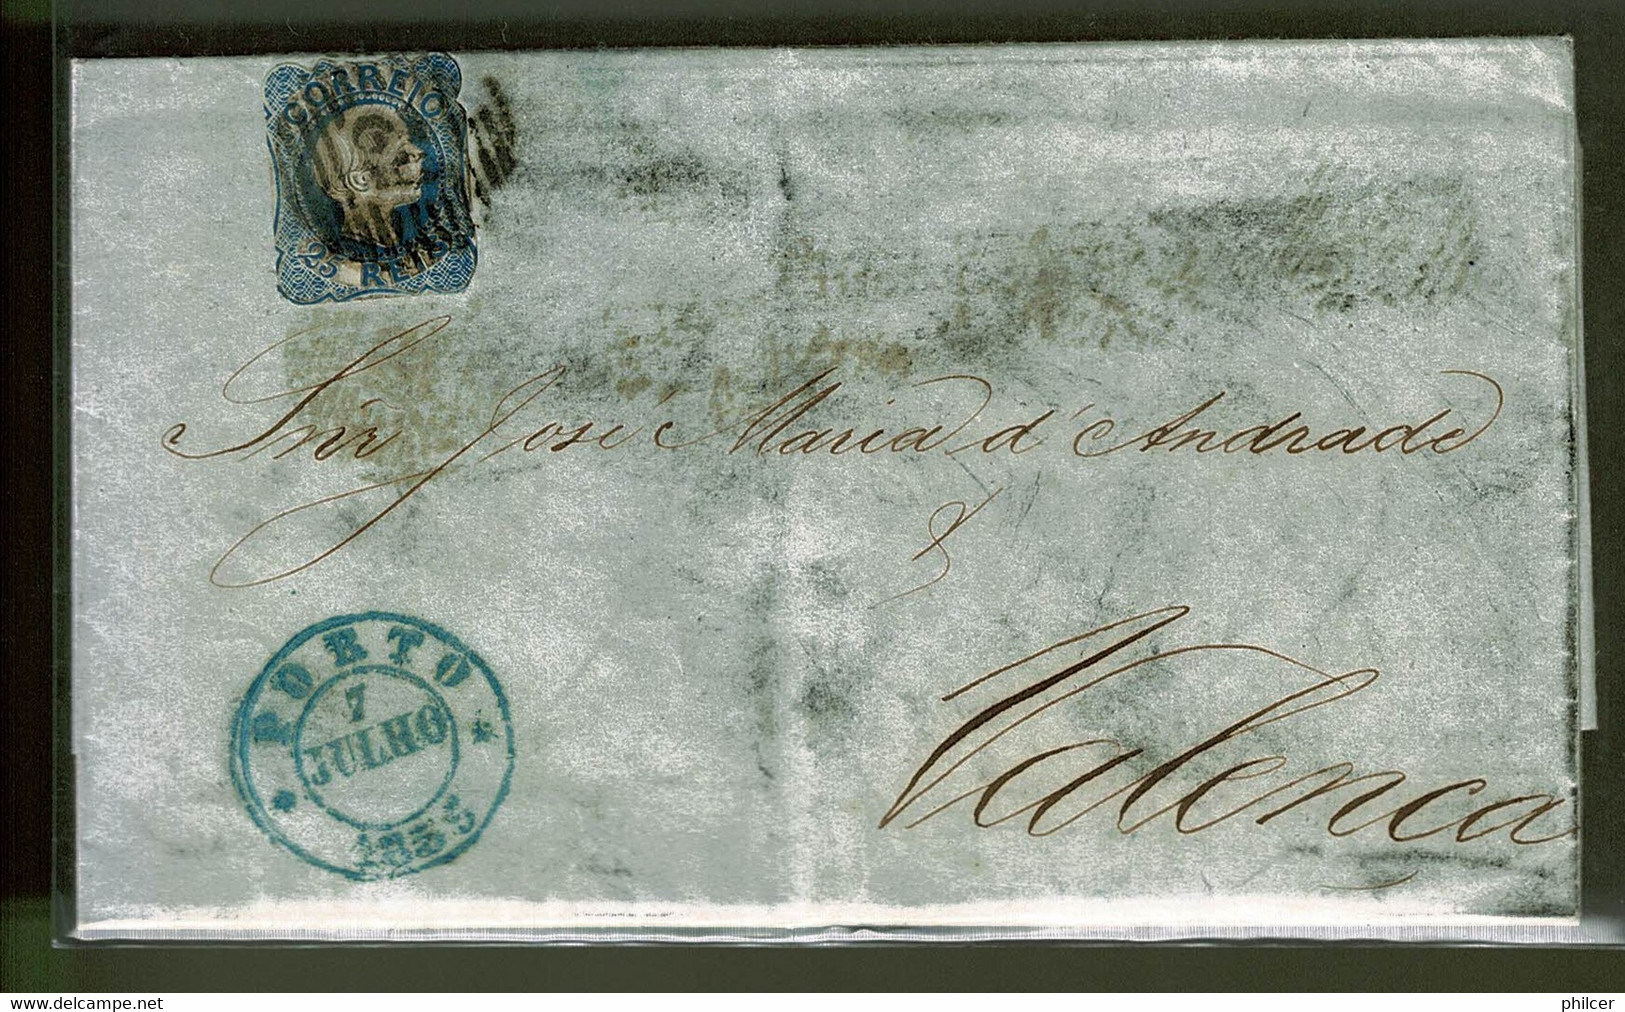 Portugal, 1855, # 7, Porto-Valença - Briefe U. Dokumente